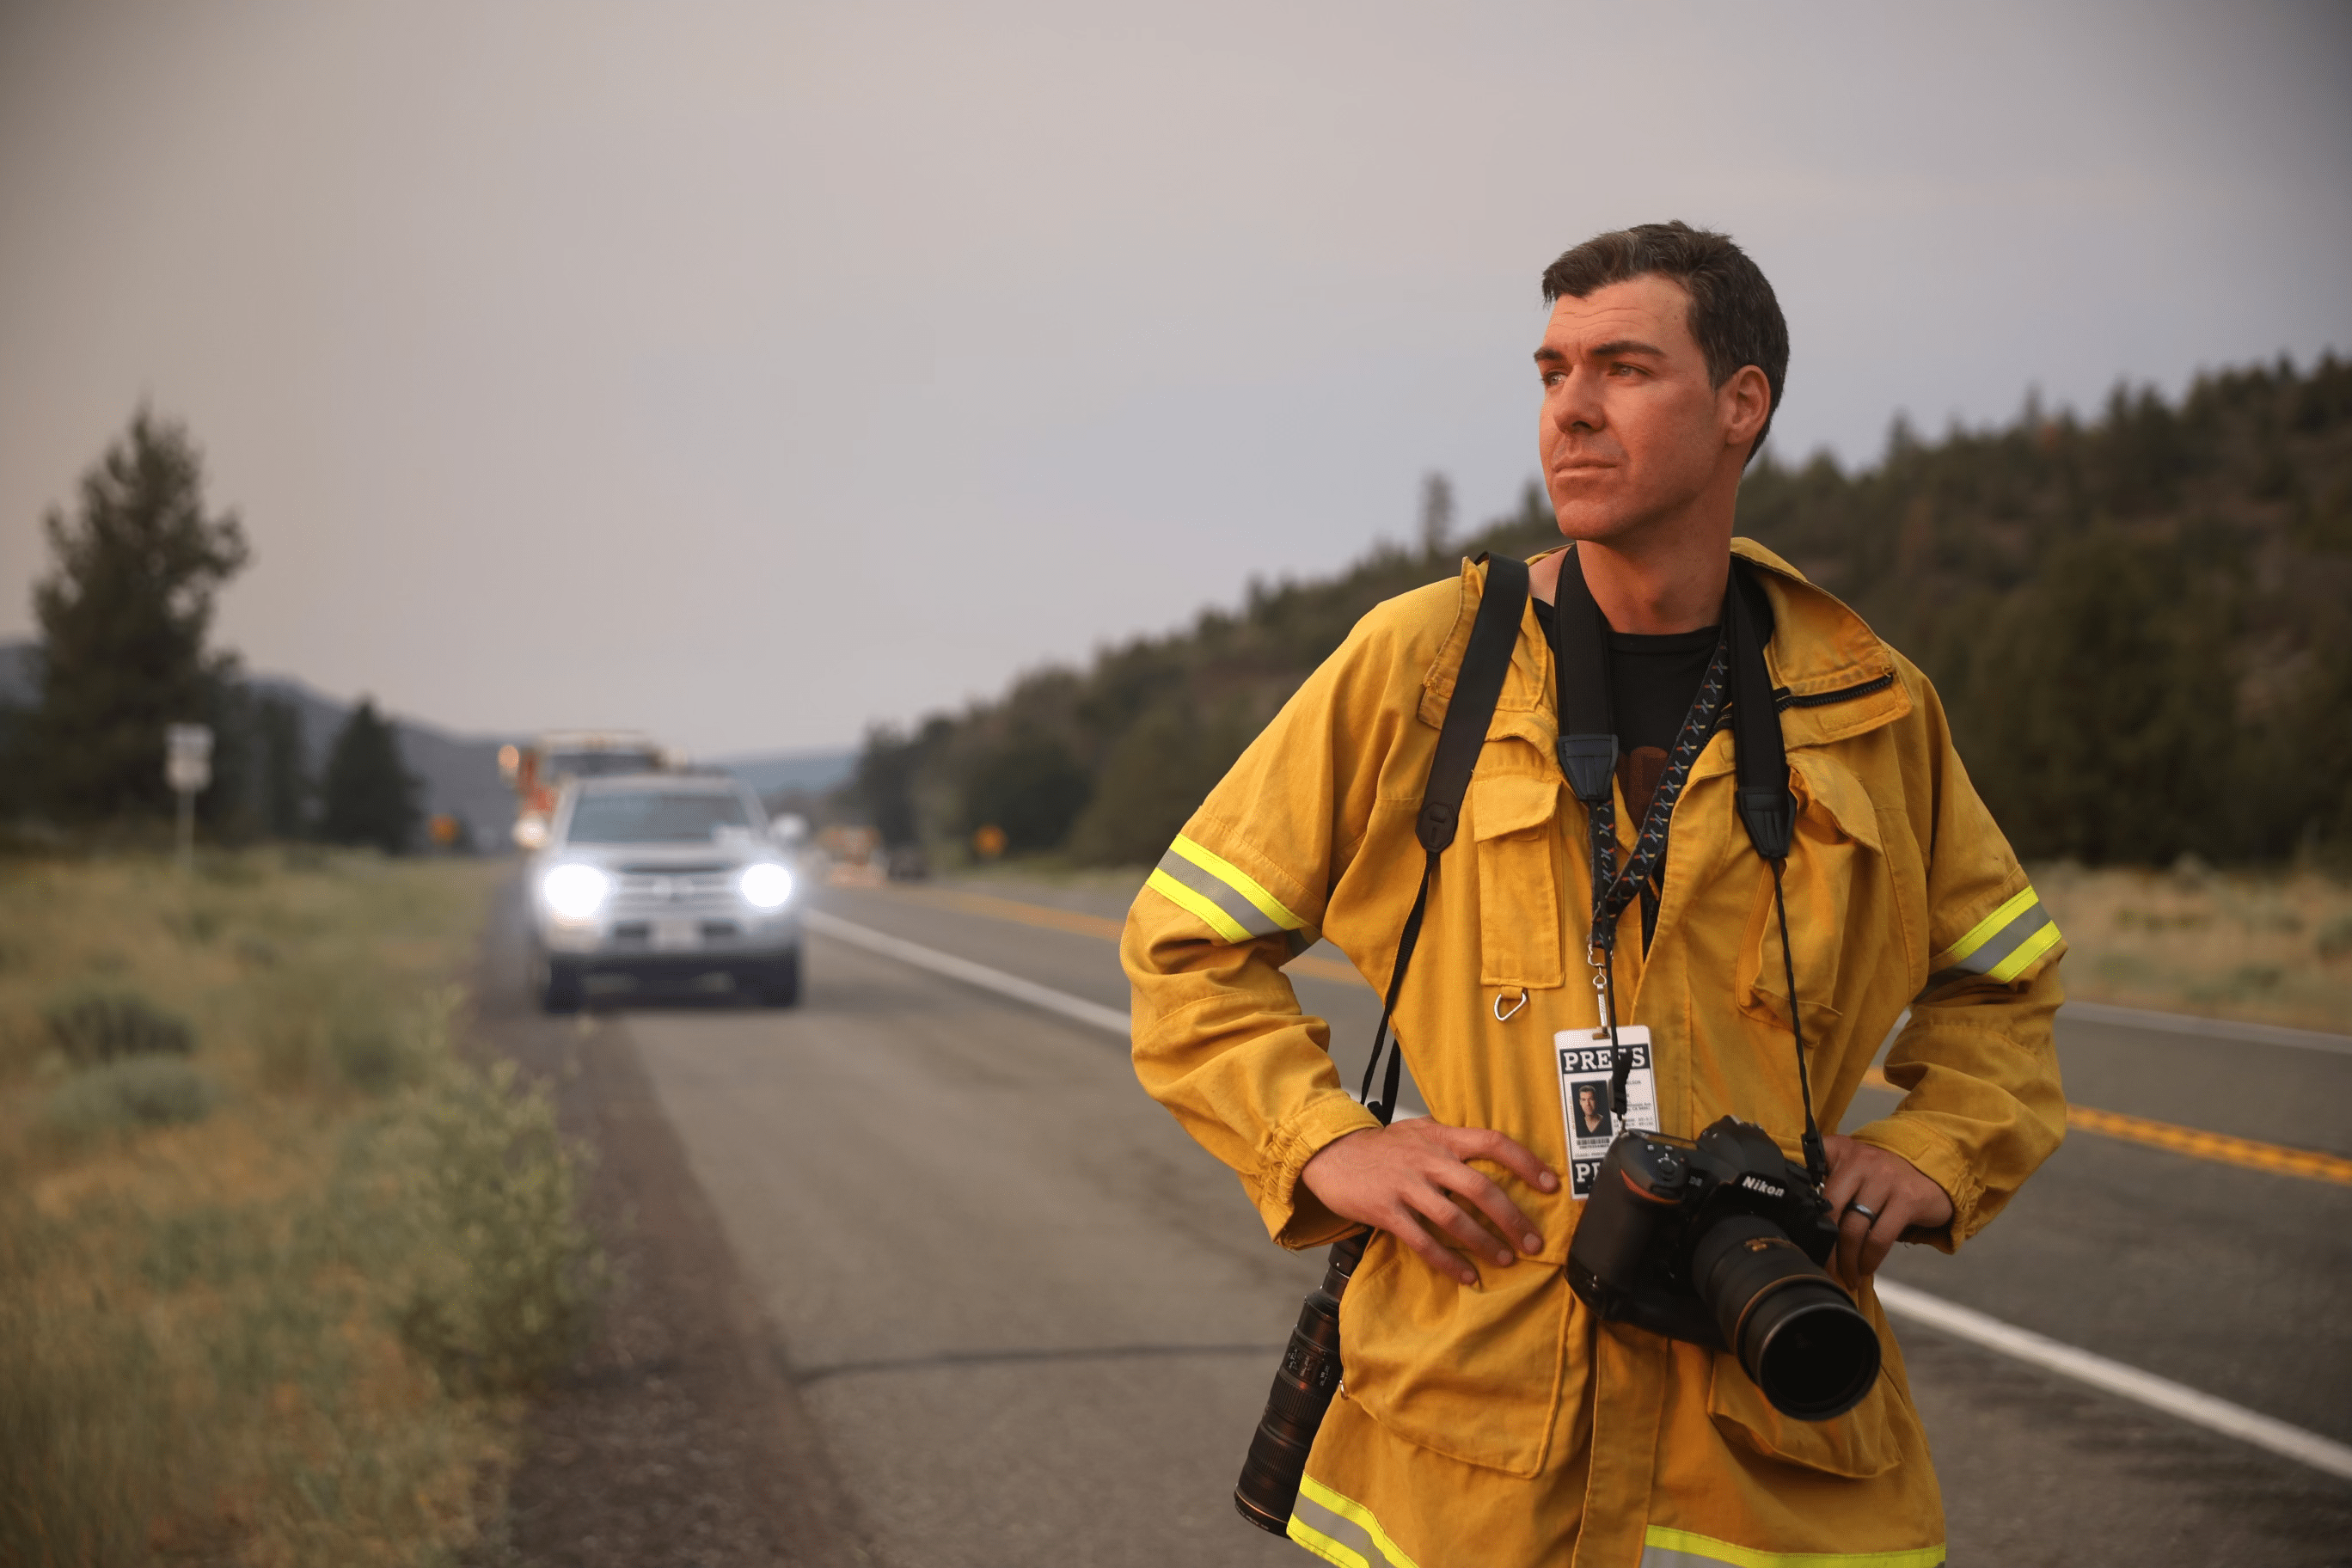 Josh Edelson, fotógrafo, analizando el paisaje mientras está parado en la carretera y lleva una cámara y una insignia de prensa atadas al cuello